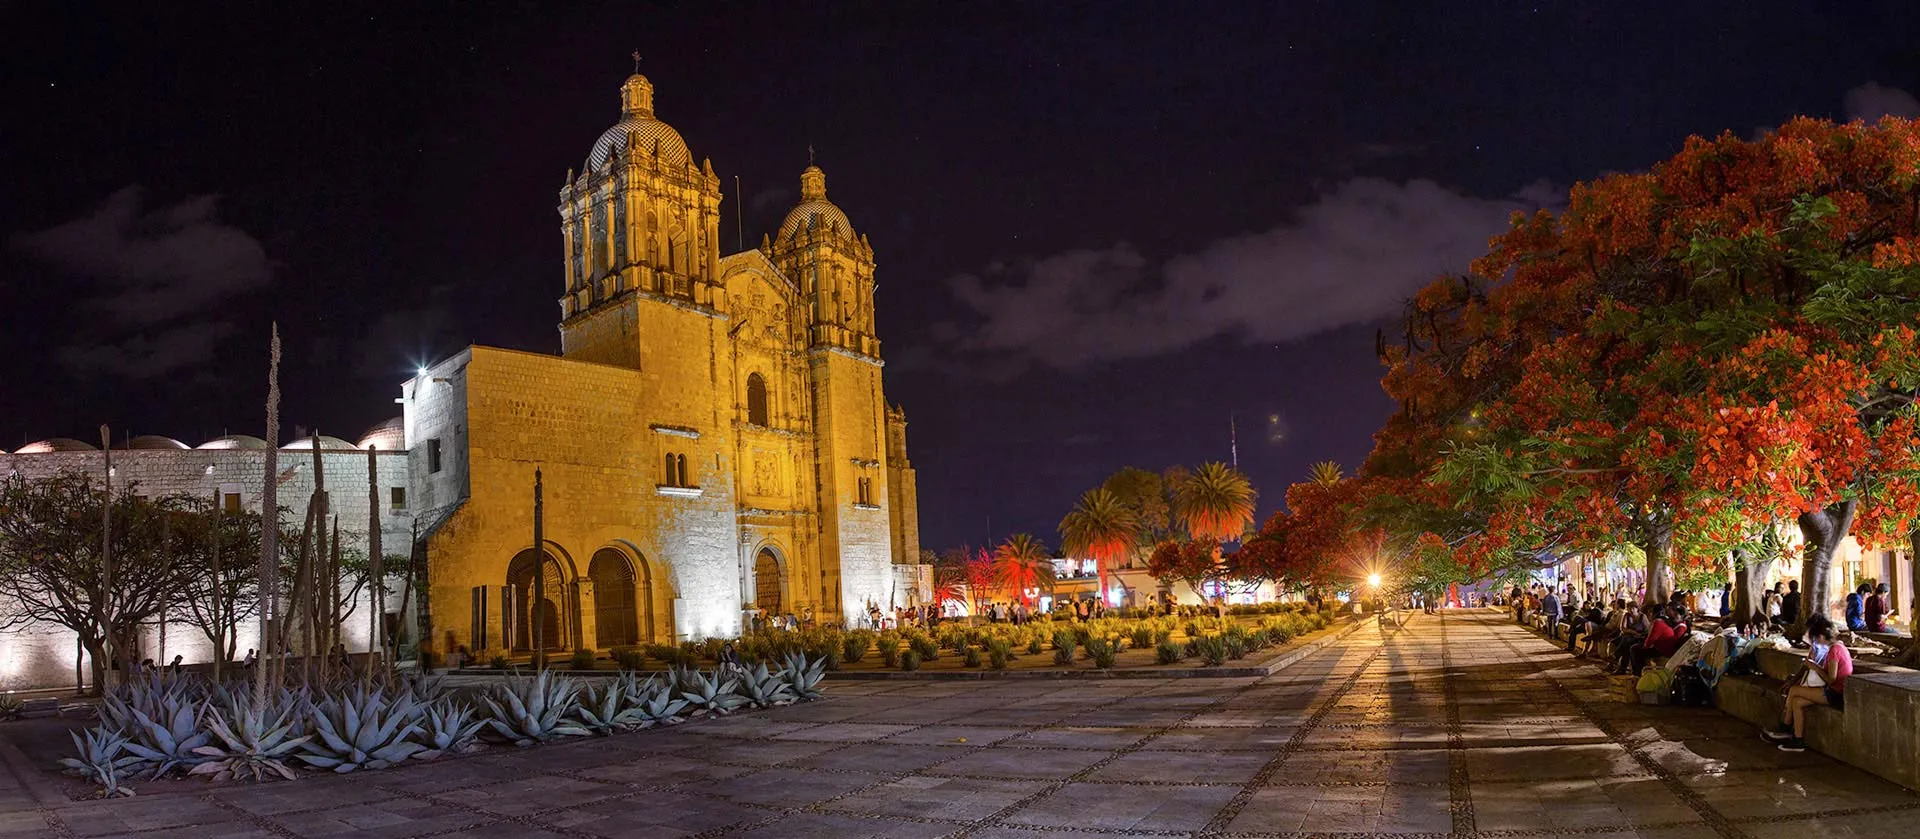 Imagen de Ciudad de Oaxaca